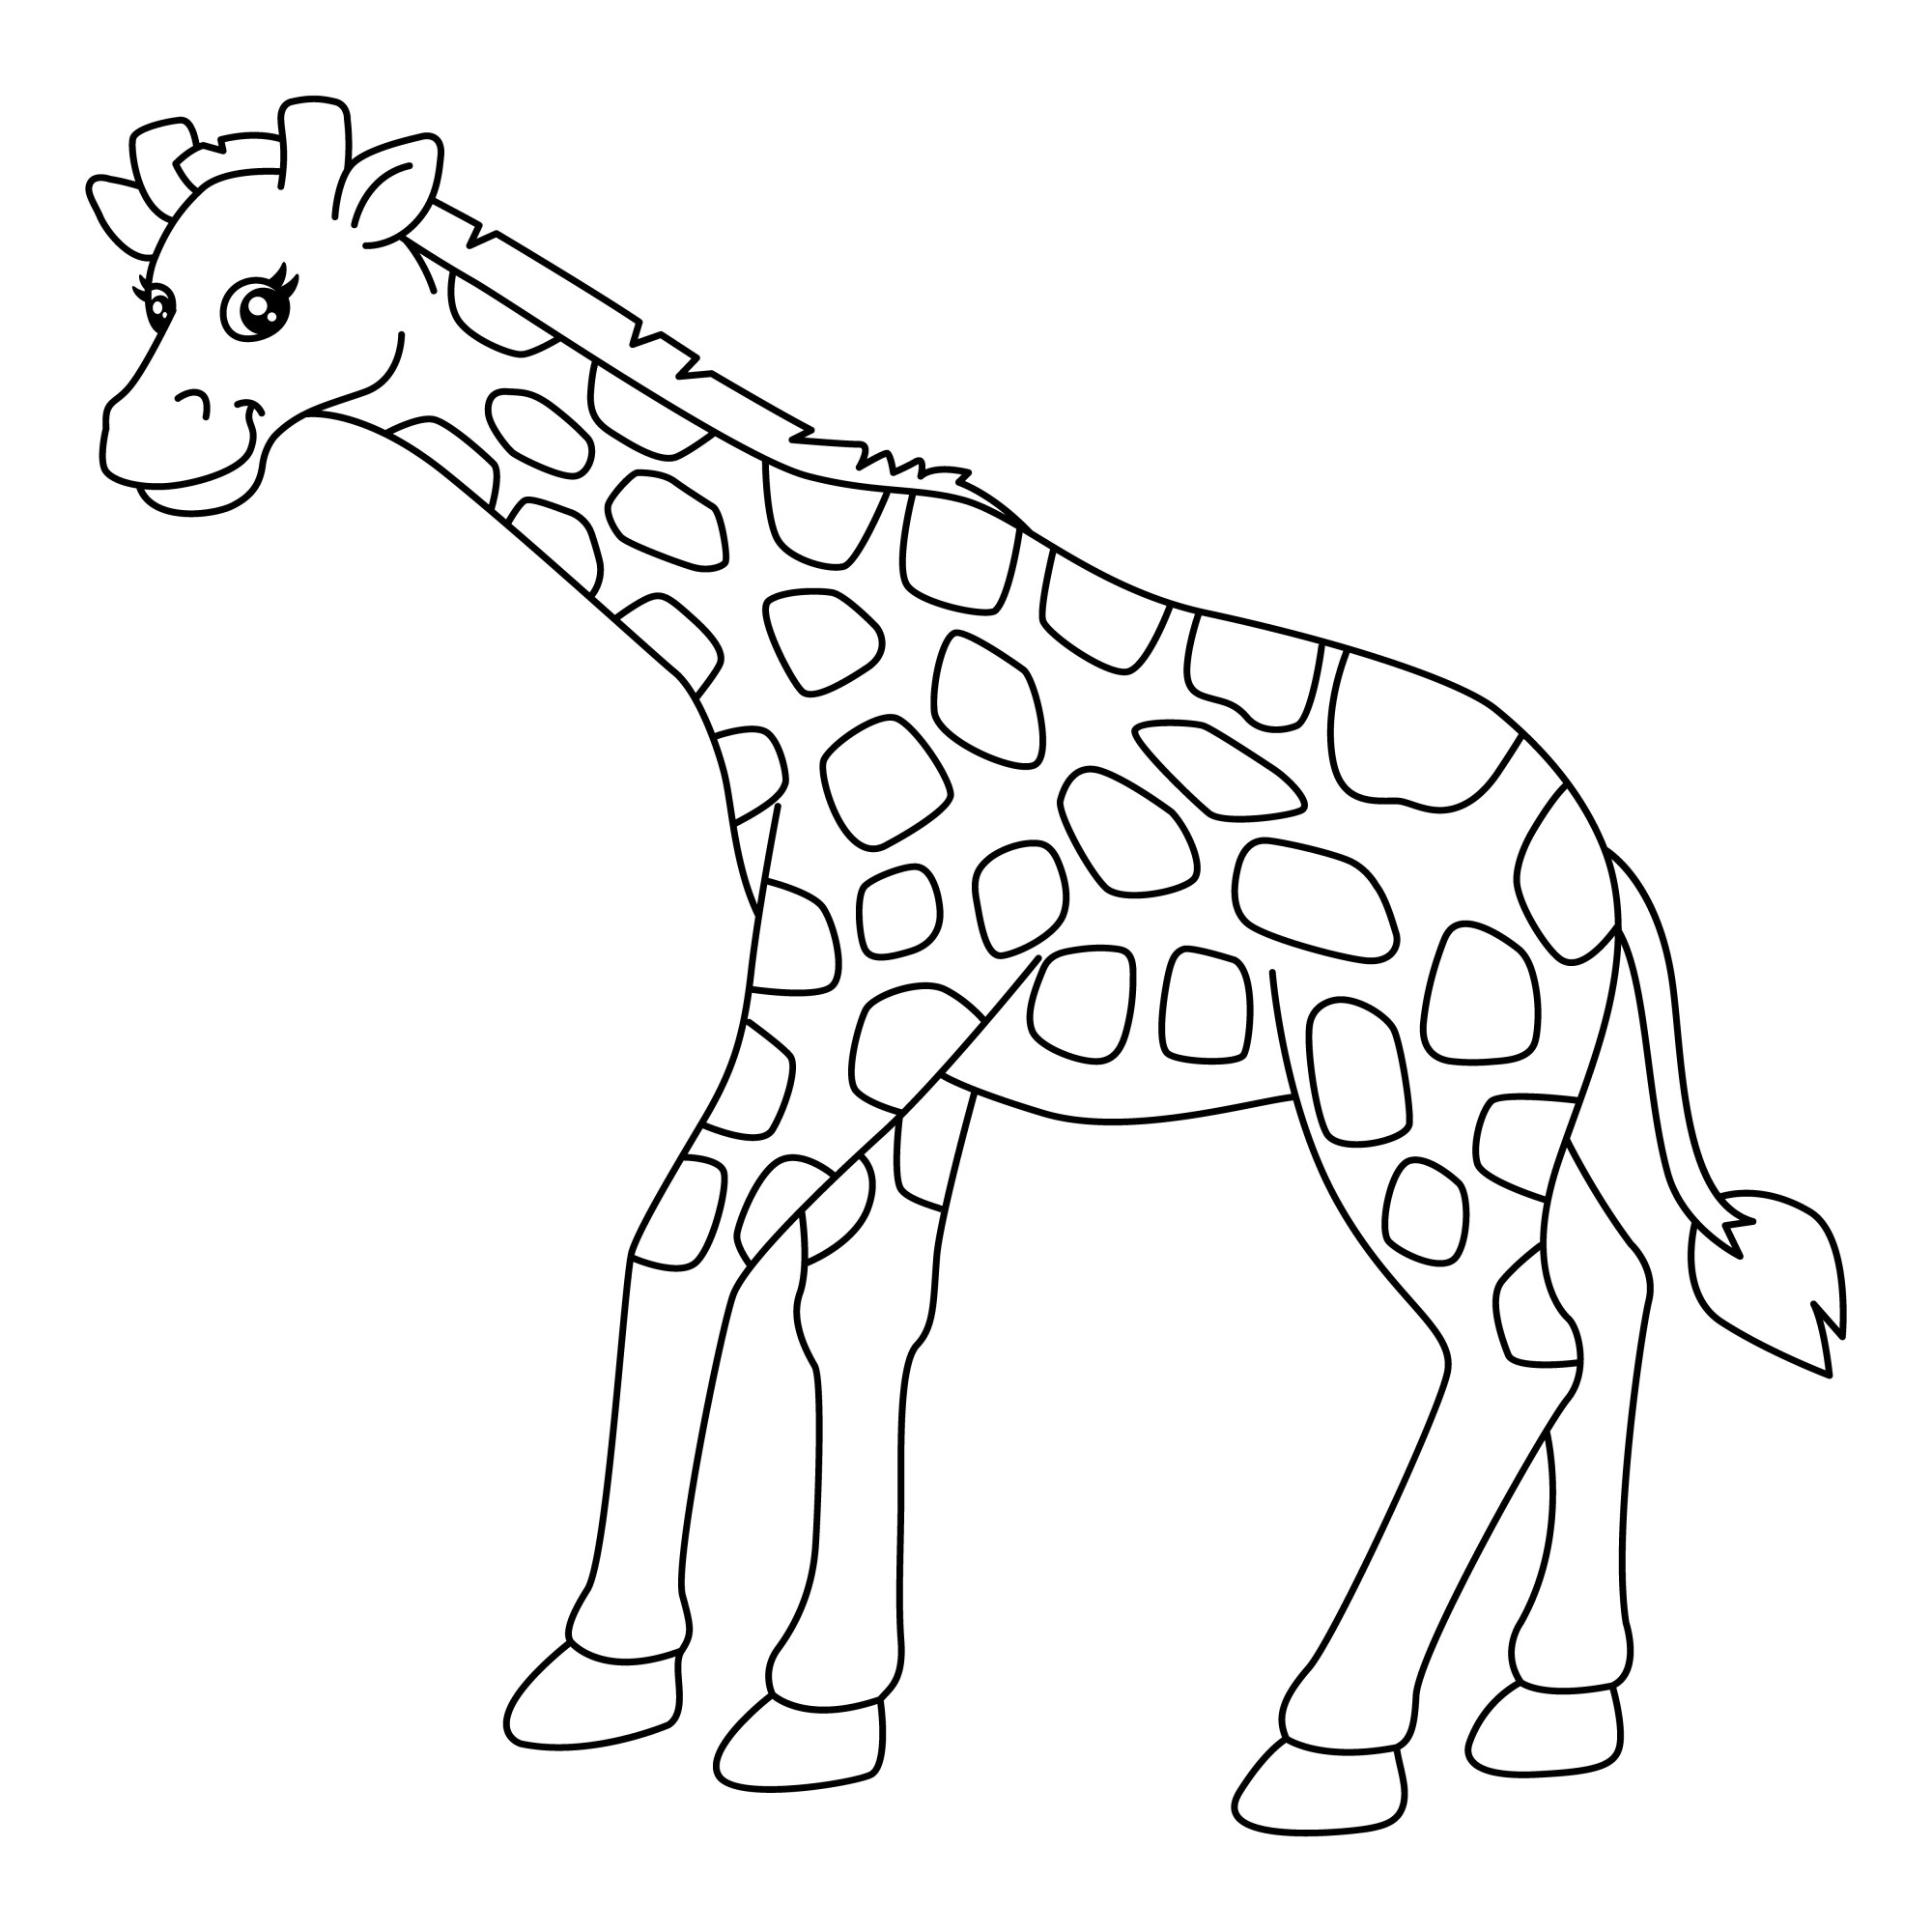 Раскраска для детей: милый забавный жираф наклонил голову